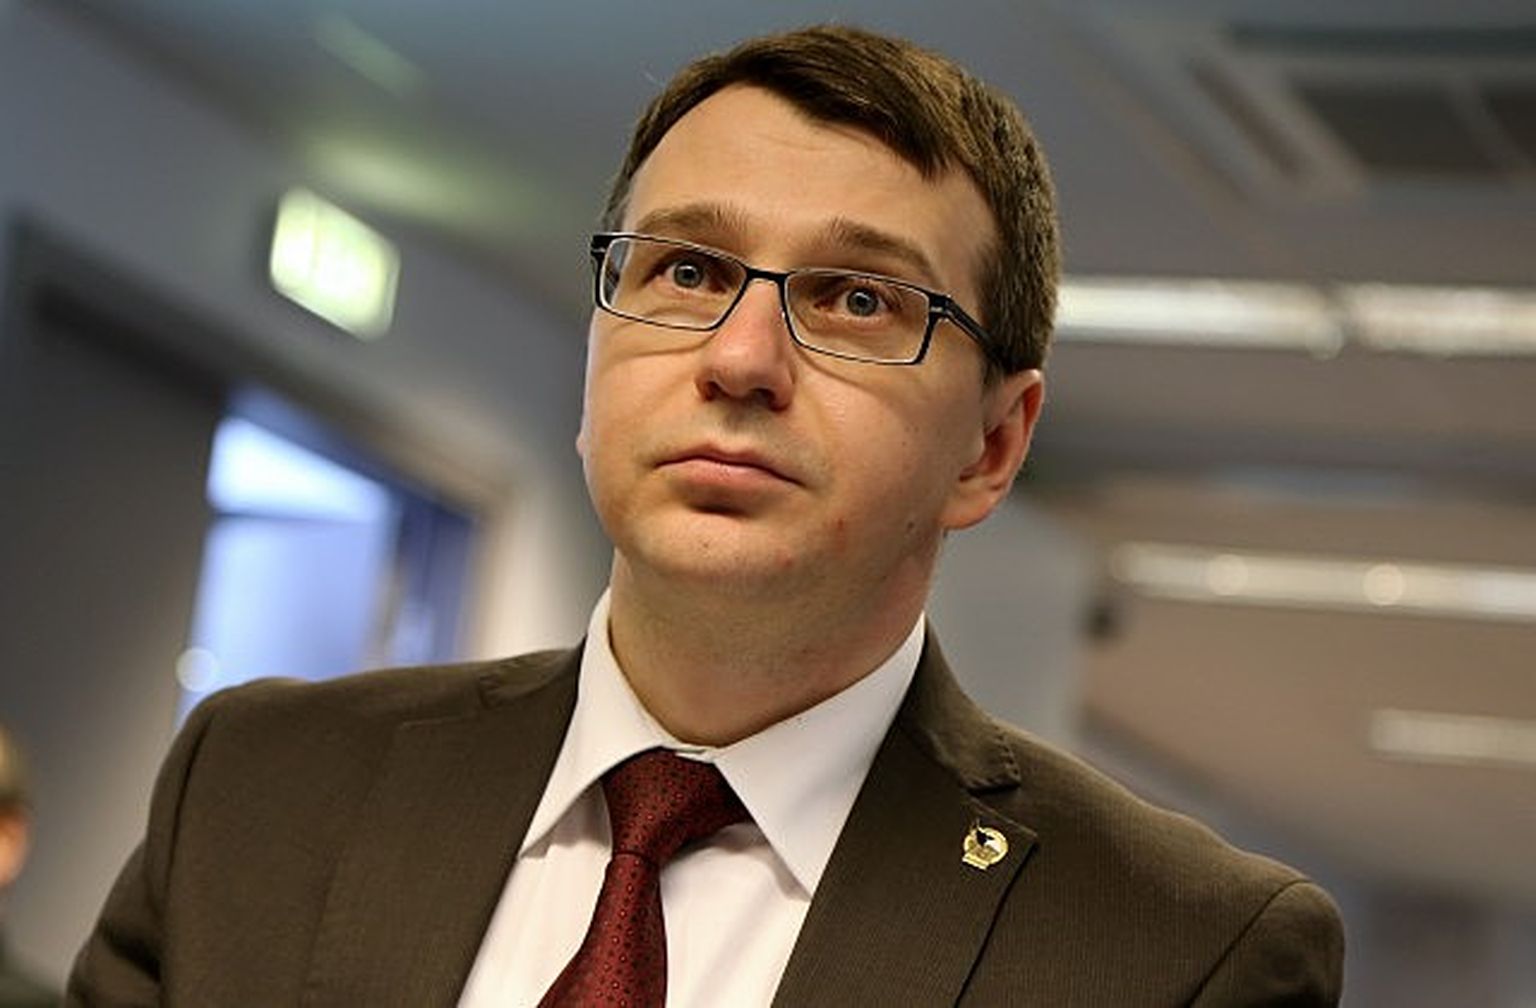 Korupcijas novēršanas un apkarošanas biroja priekšnieks Jaroslavs Streļčenoks